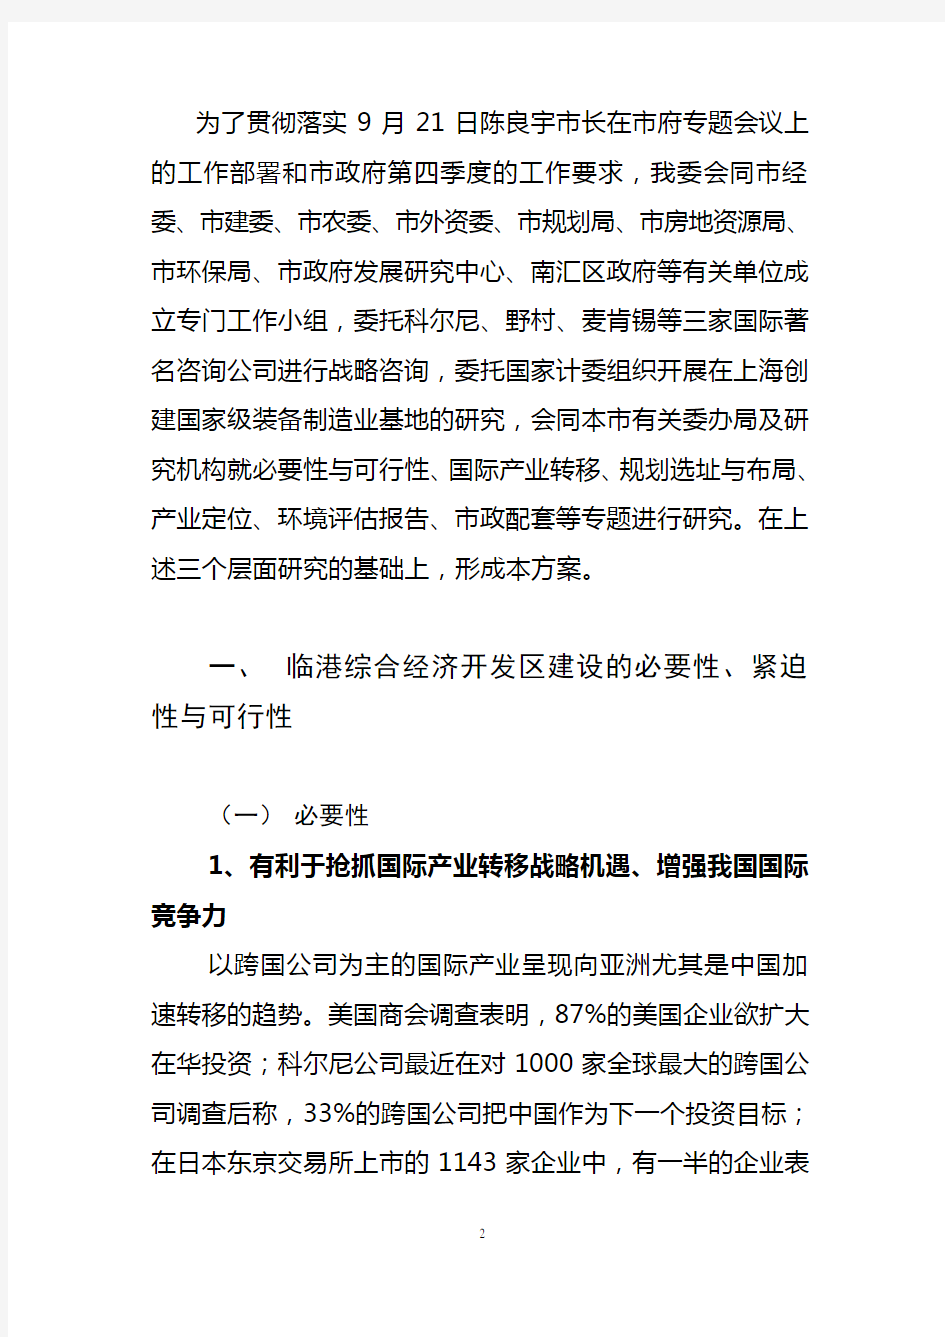 上海临港综合经济开发区建设的基本方案(1212)